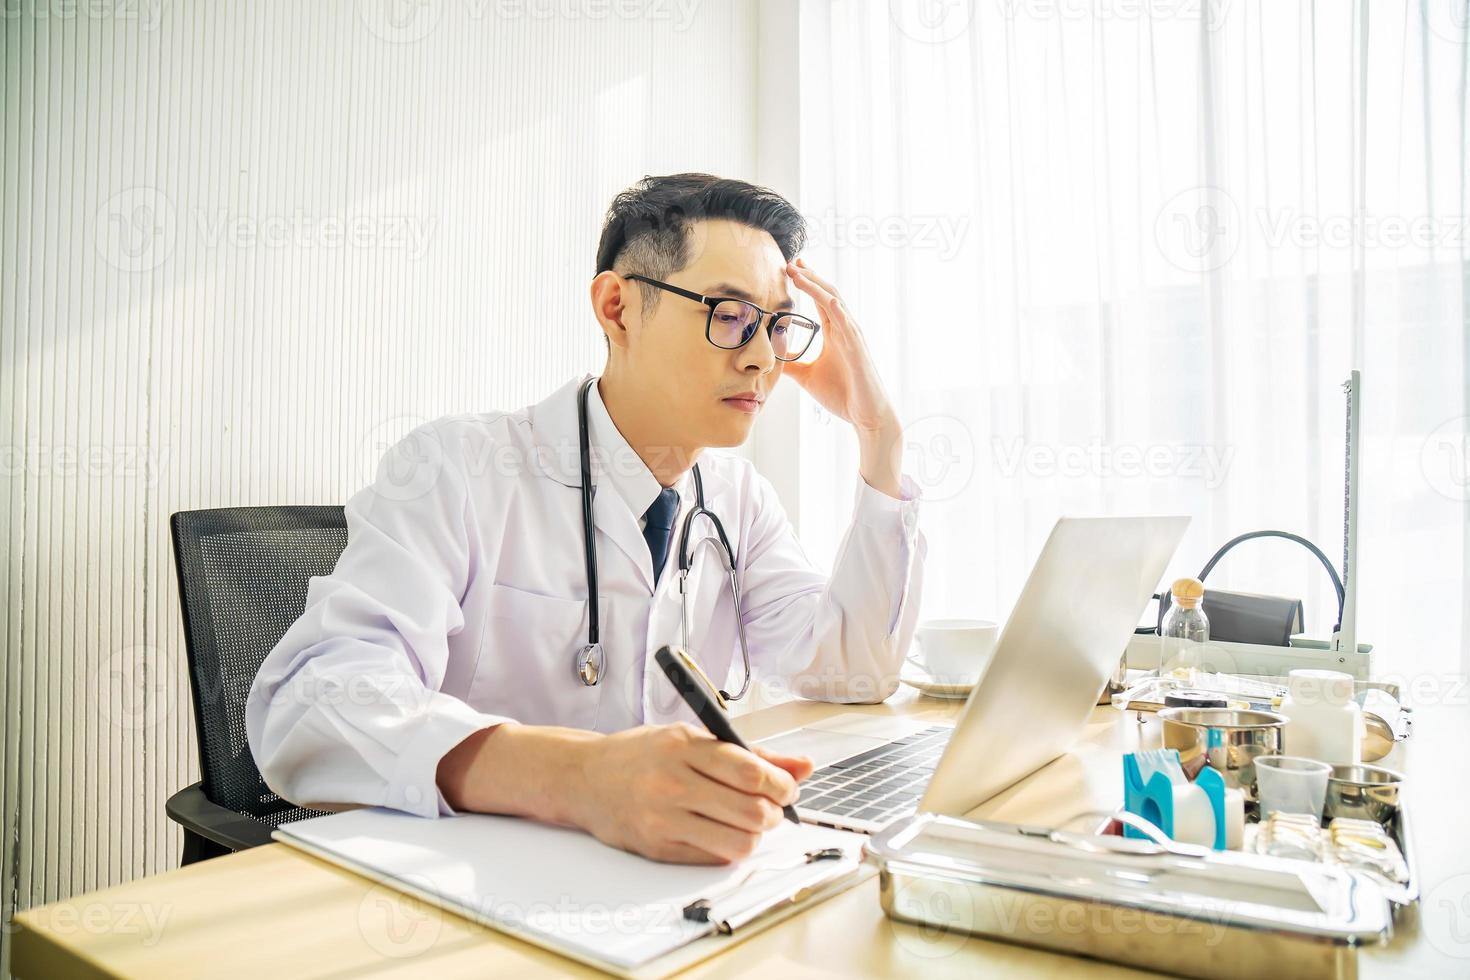 médecin asiatique troublé travaillant sur ordinateur au bureau dans une clinique hospitalière, inquiet, réfléchissant fort, concept de soins de santé pour covid19. photo